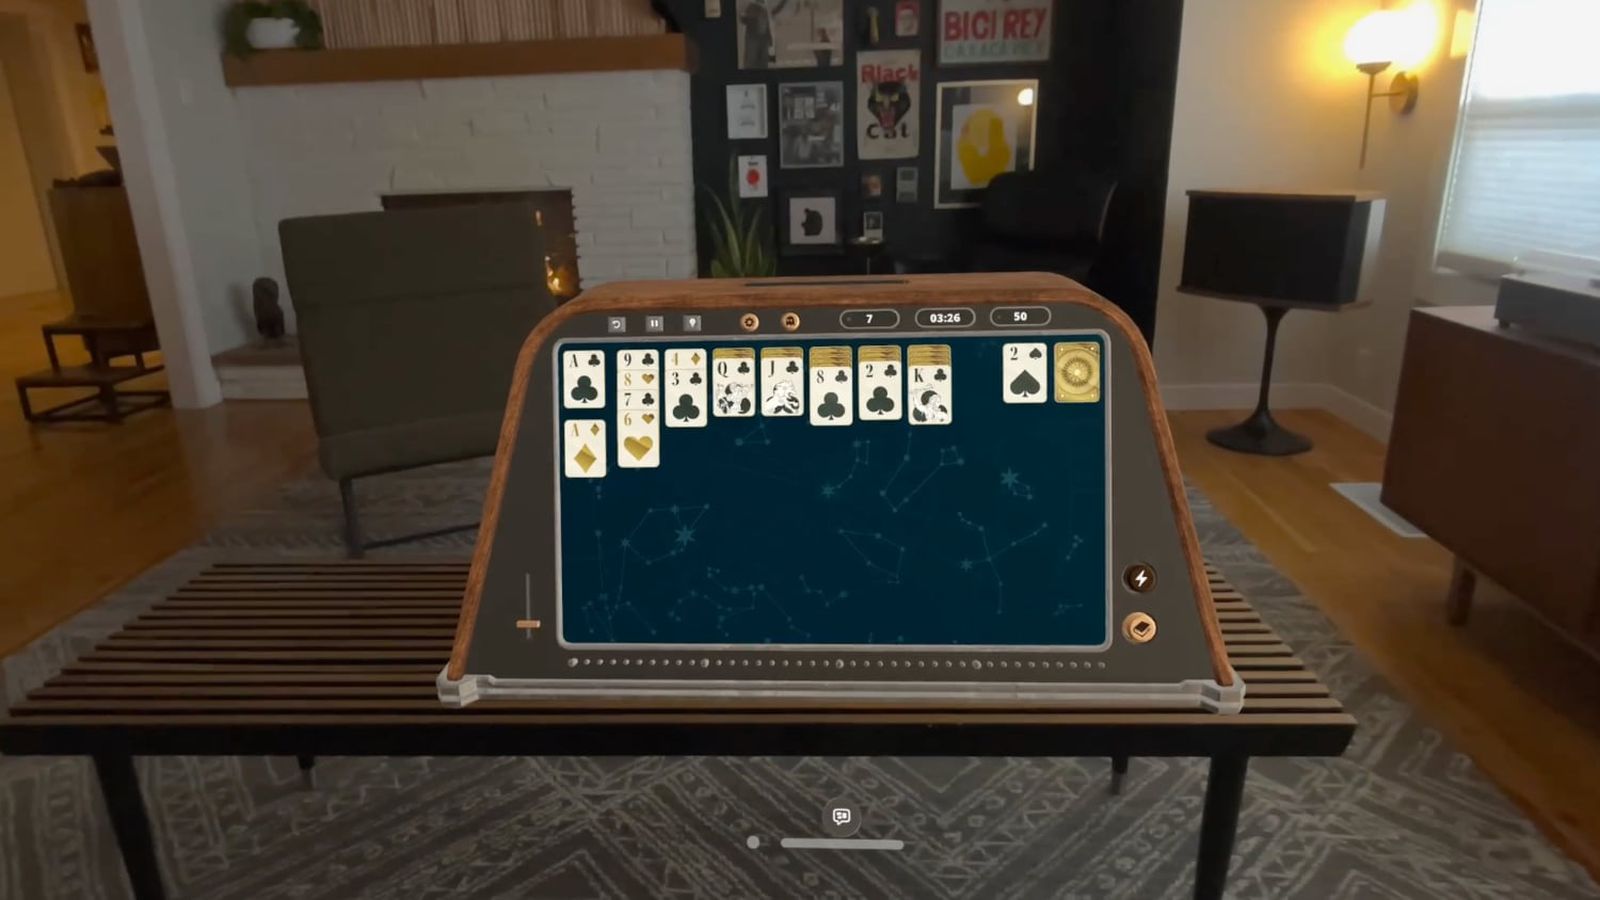 از iPhoneIslam.com، یک بازی یک نفره مجازی که در یک دستگاه واقعیت افزوده در یک اتاق نشیمن با تزئینات مدرن در هفته 19 تا 25 آوریل اجرا می شود.